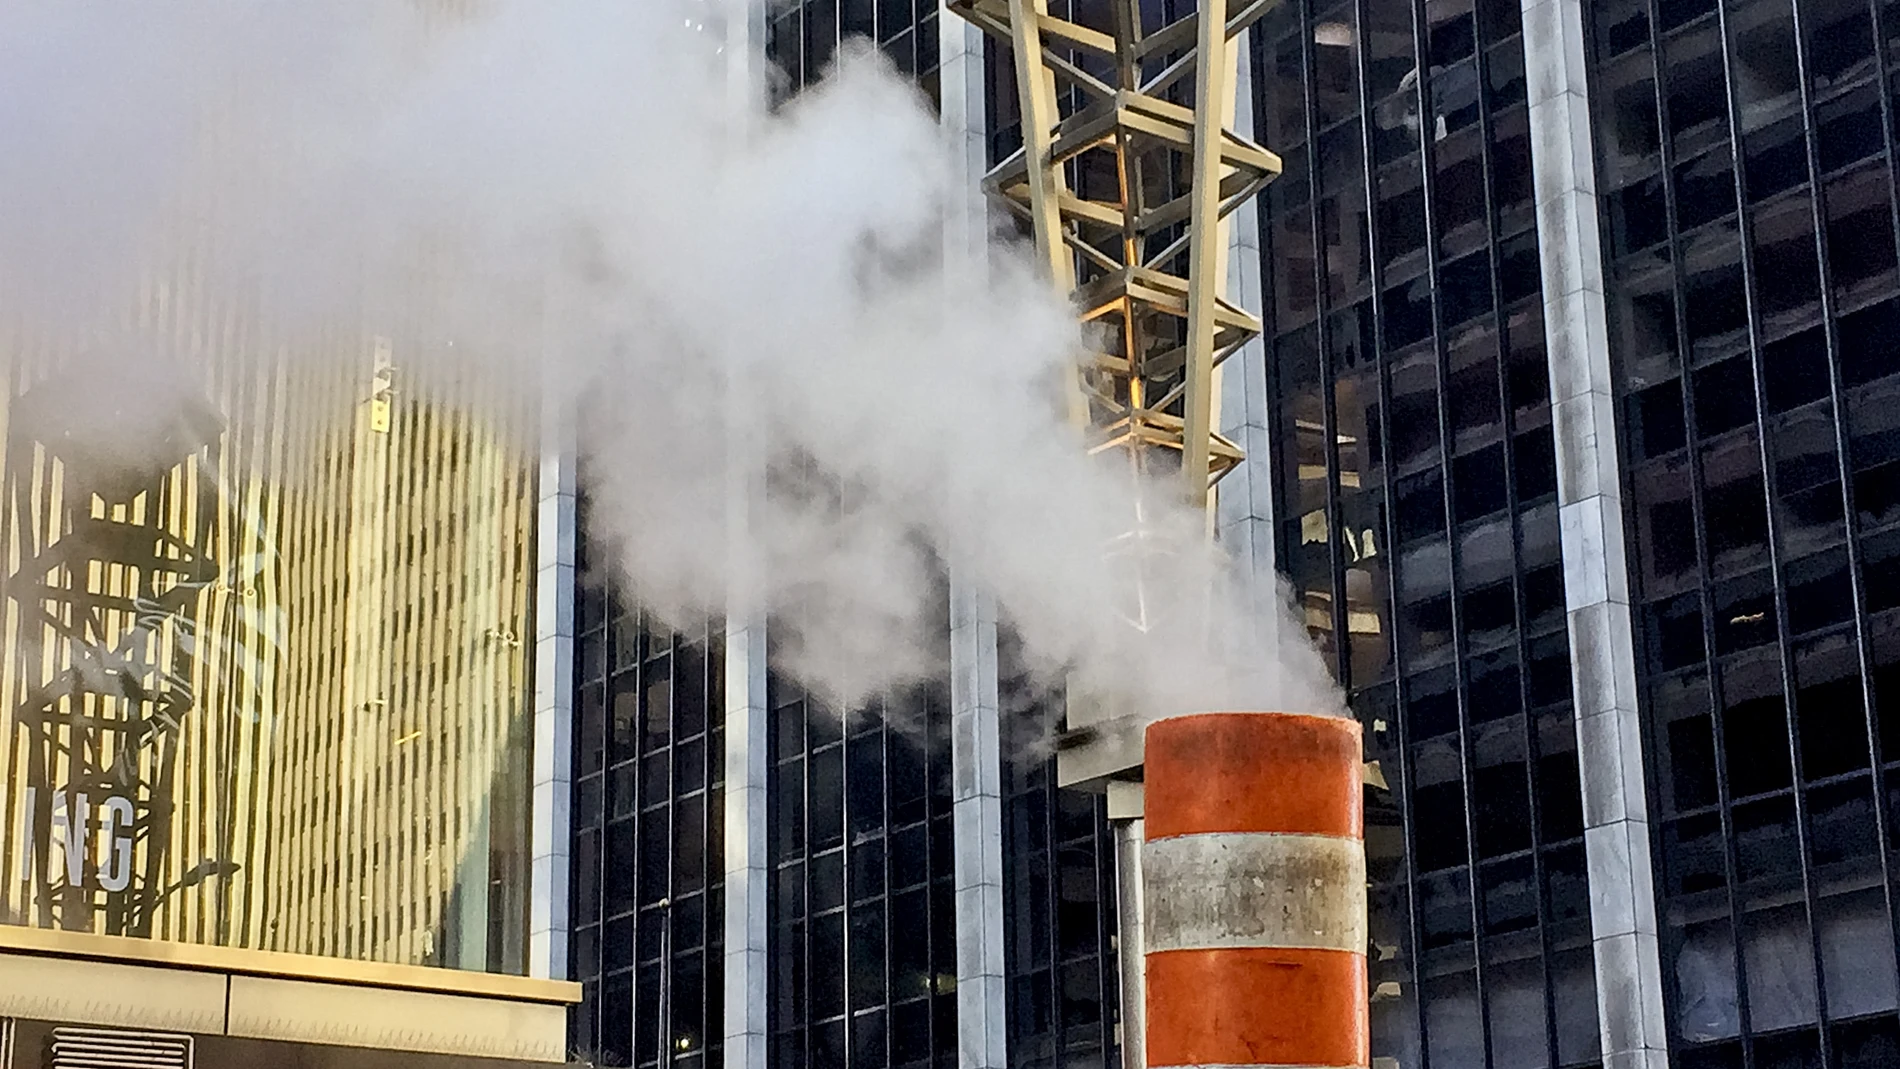 Encontrar humo y vapor por las calles de Nueva York es muy común y mucha gente se sorprende de este efecto